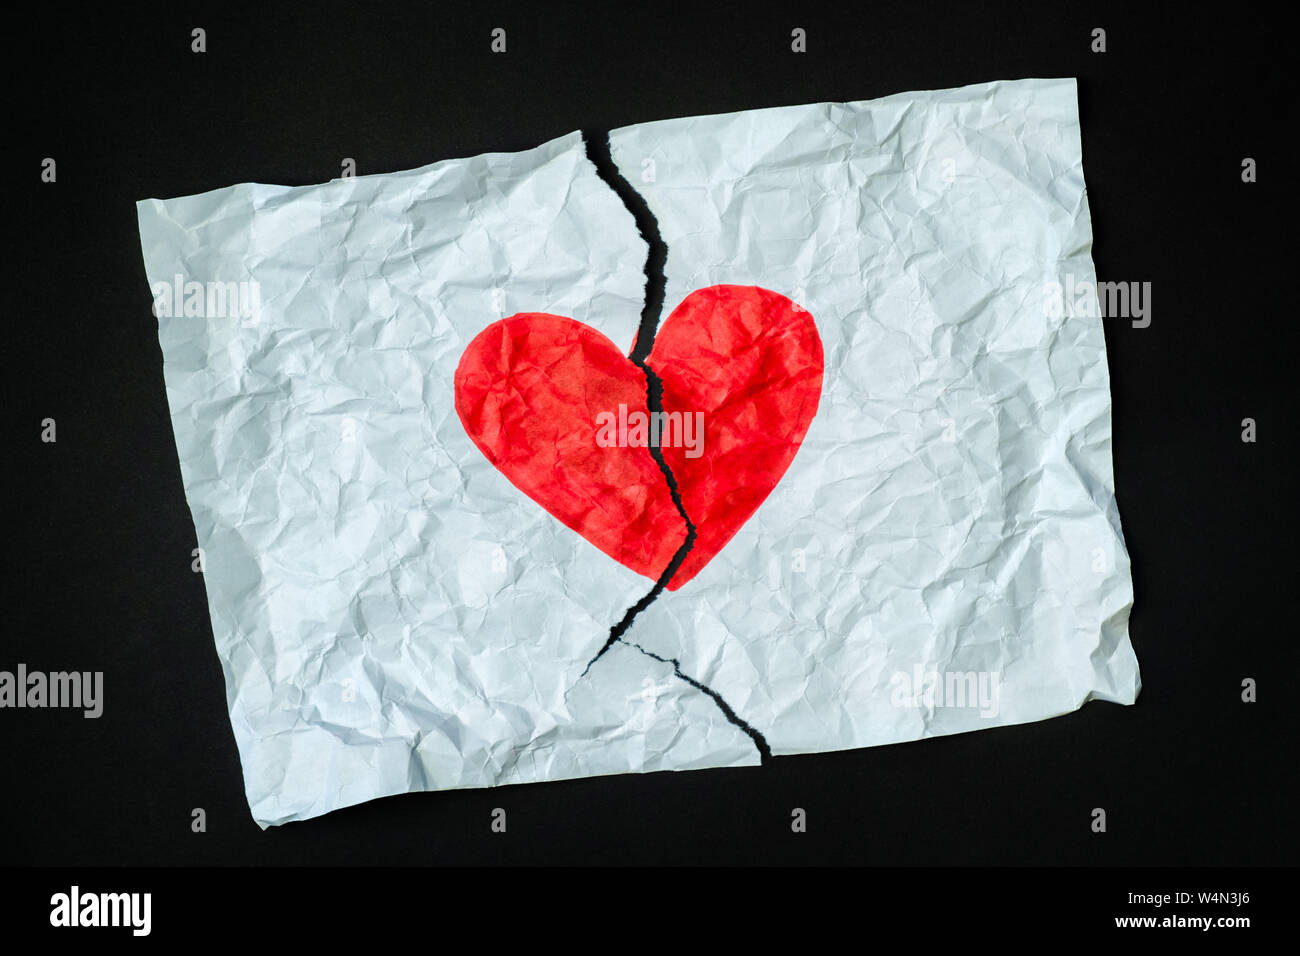 Gebrochenes Herz, Verlust, beendete Beziehung oder betrügen Konzept. Zeichen der Herzen mit einem Stift auf ein Stück zerbröckelt zerrissenes Papier gezeichnet. Stockfoto